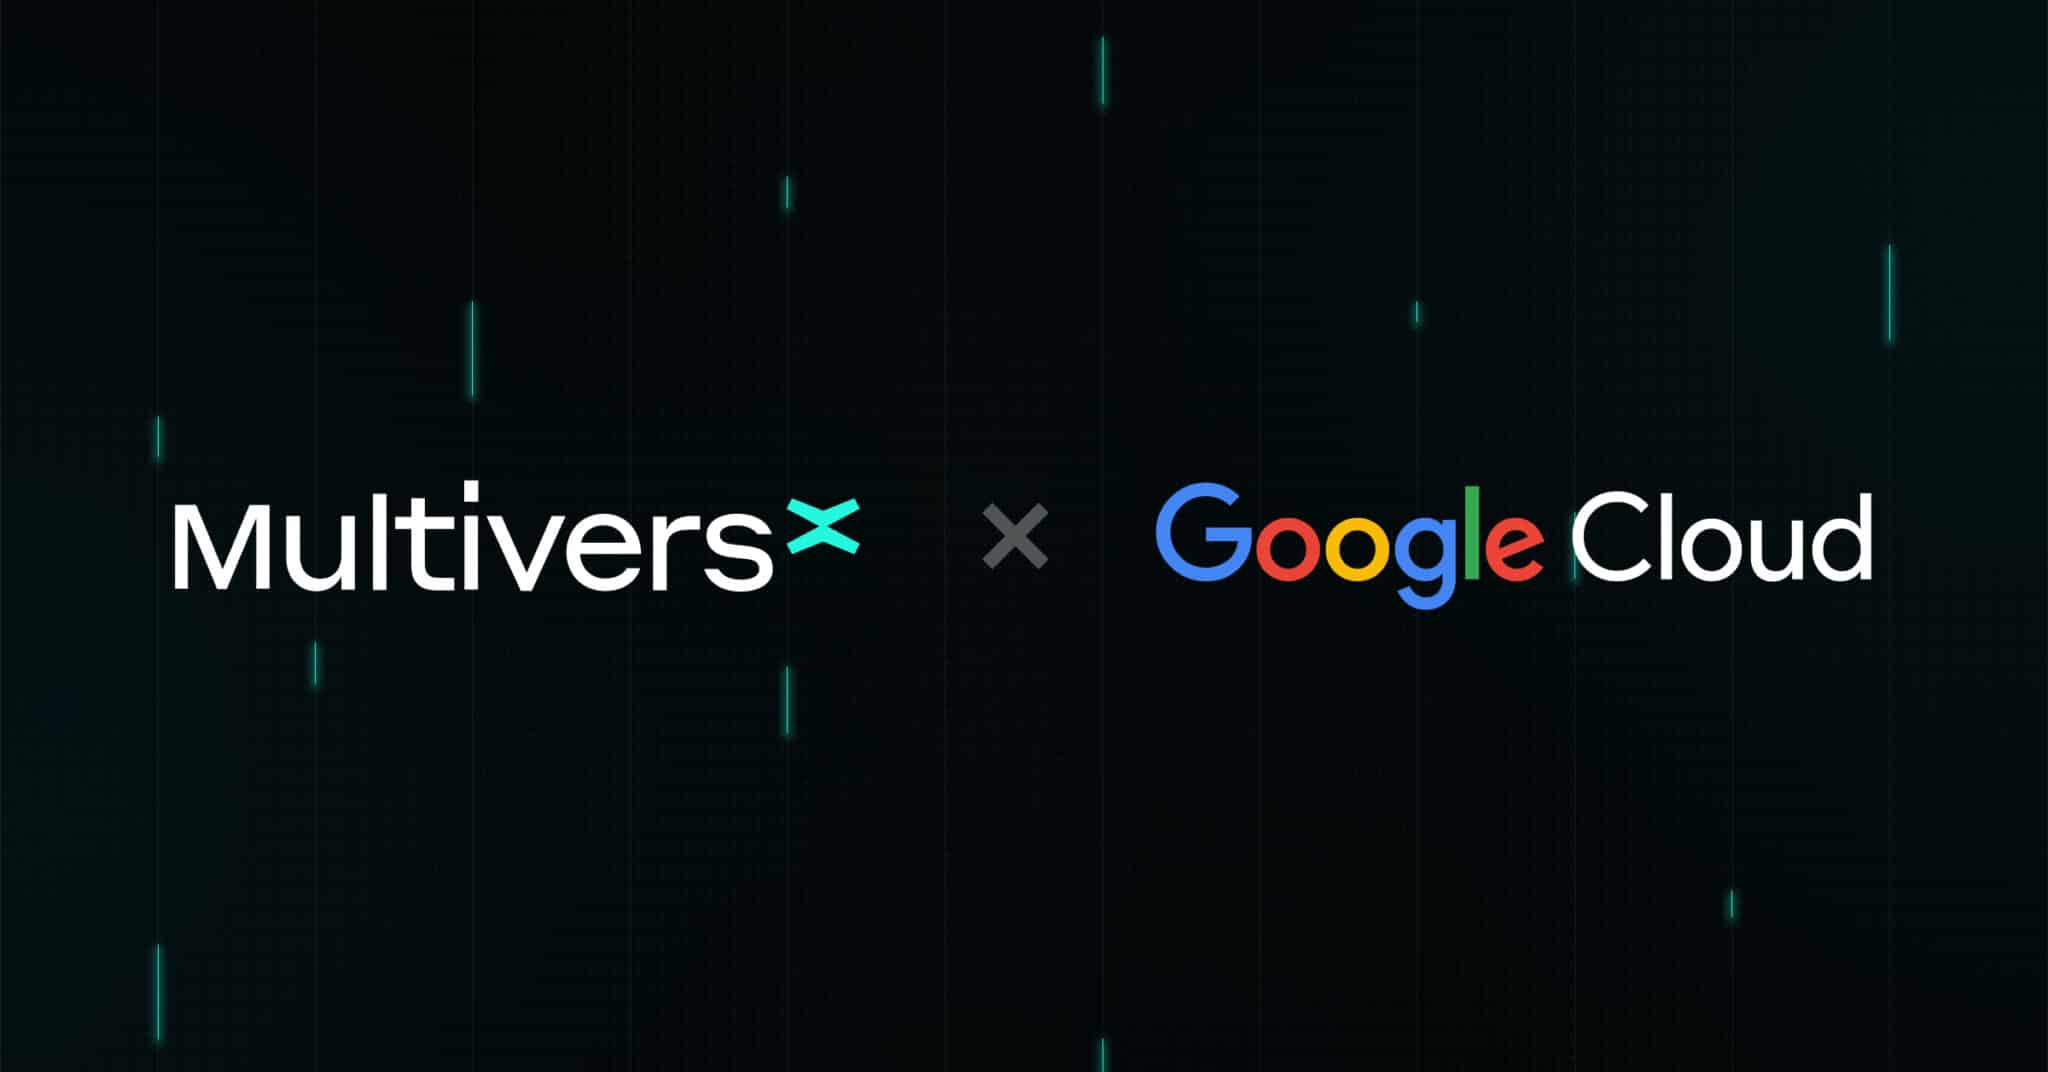 Το Google Cloud συνεργάστηκε με το MultiversX για να ενισχύσει την παρουσία του στο Metaverse